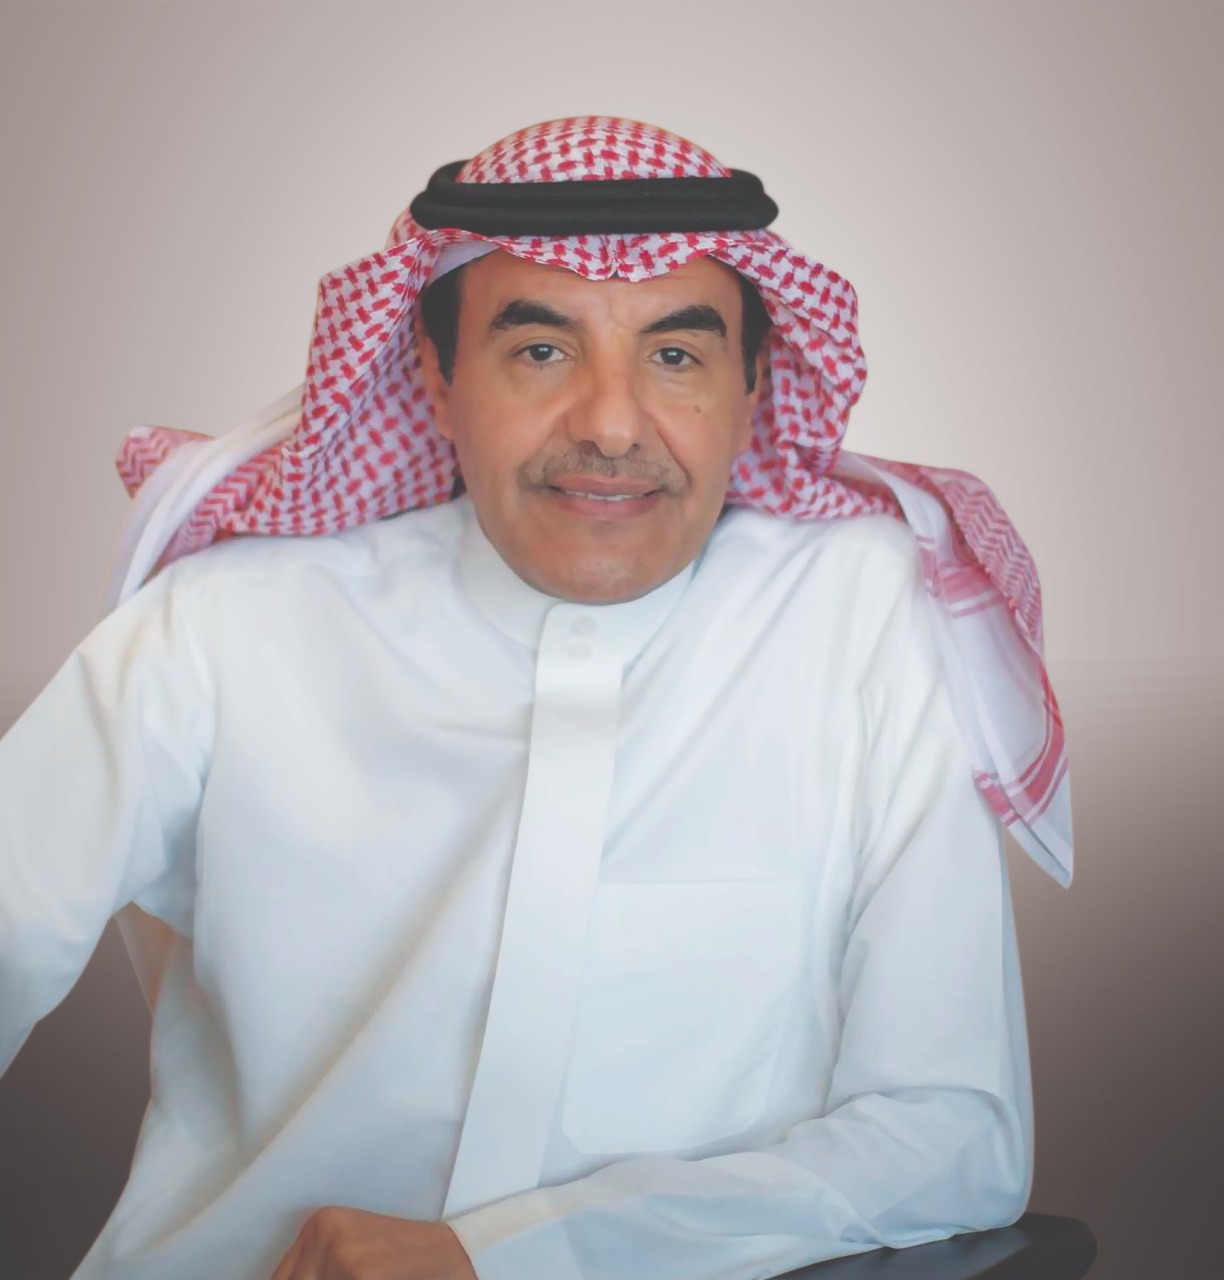 الدكتور عبد الرحمن بن محمد العاصمي، المدير العام لمكتب التربية العربي لدول الخليج العربي